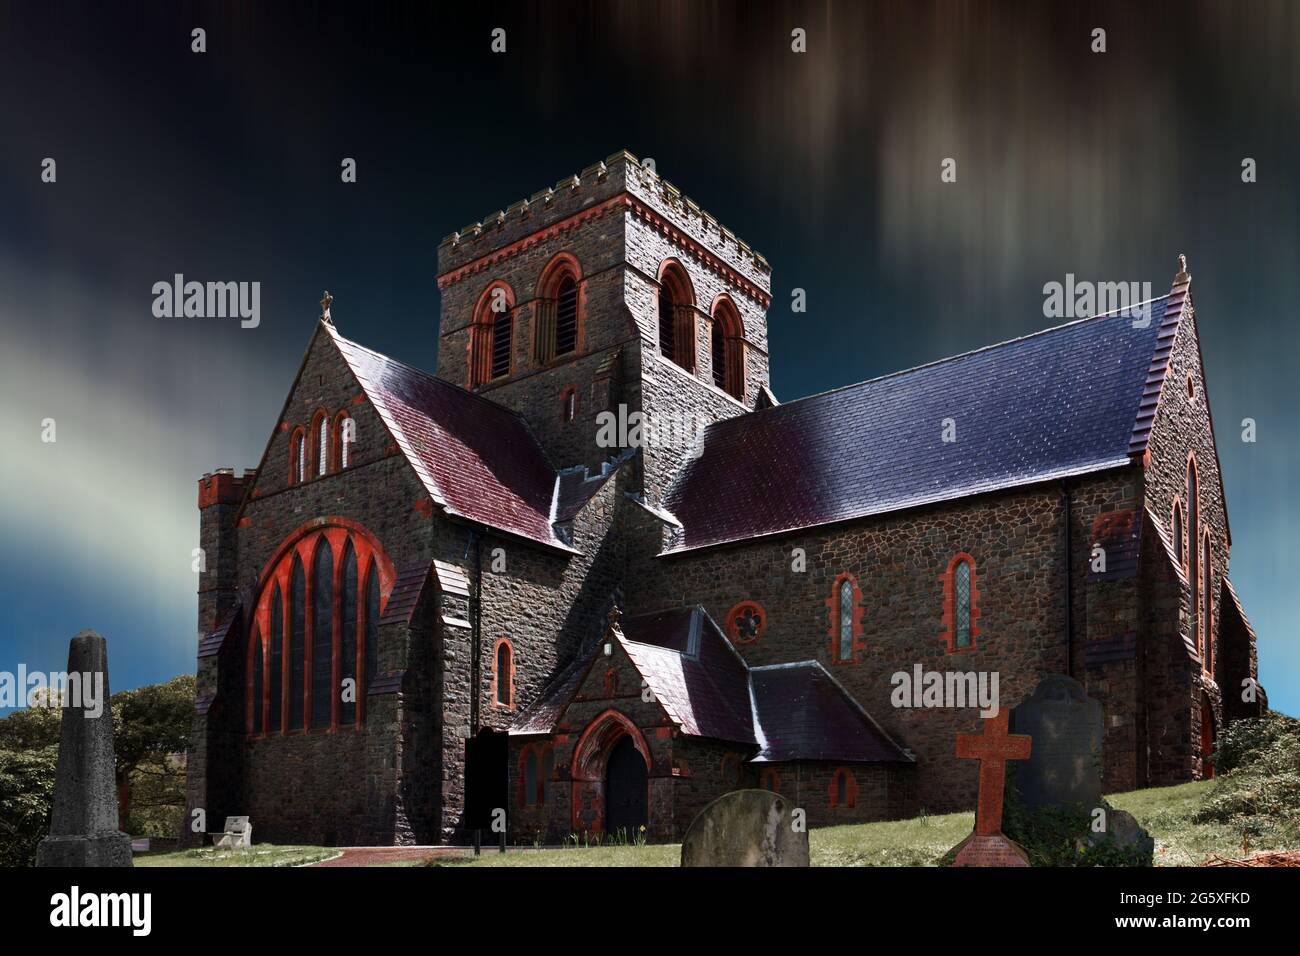 Diese Darstellung einer finsteren Kirche basiert auf der St. Padarn's Church in Llanberis, Nordwales, die 1885 erbaut wurde. Stockfoto